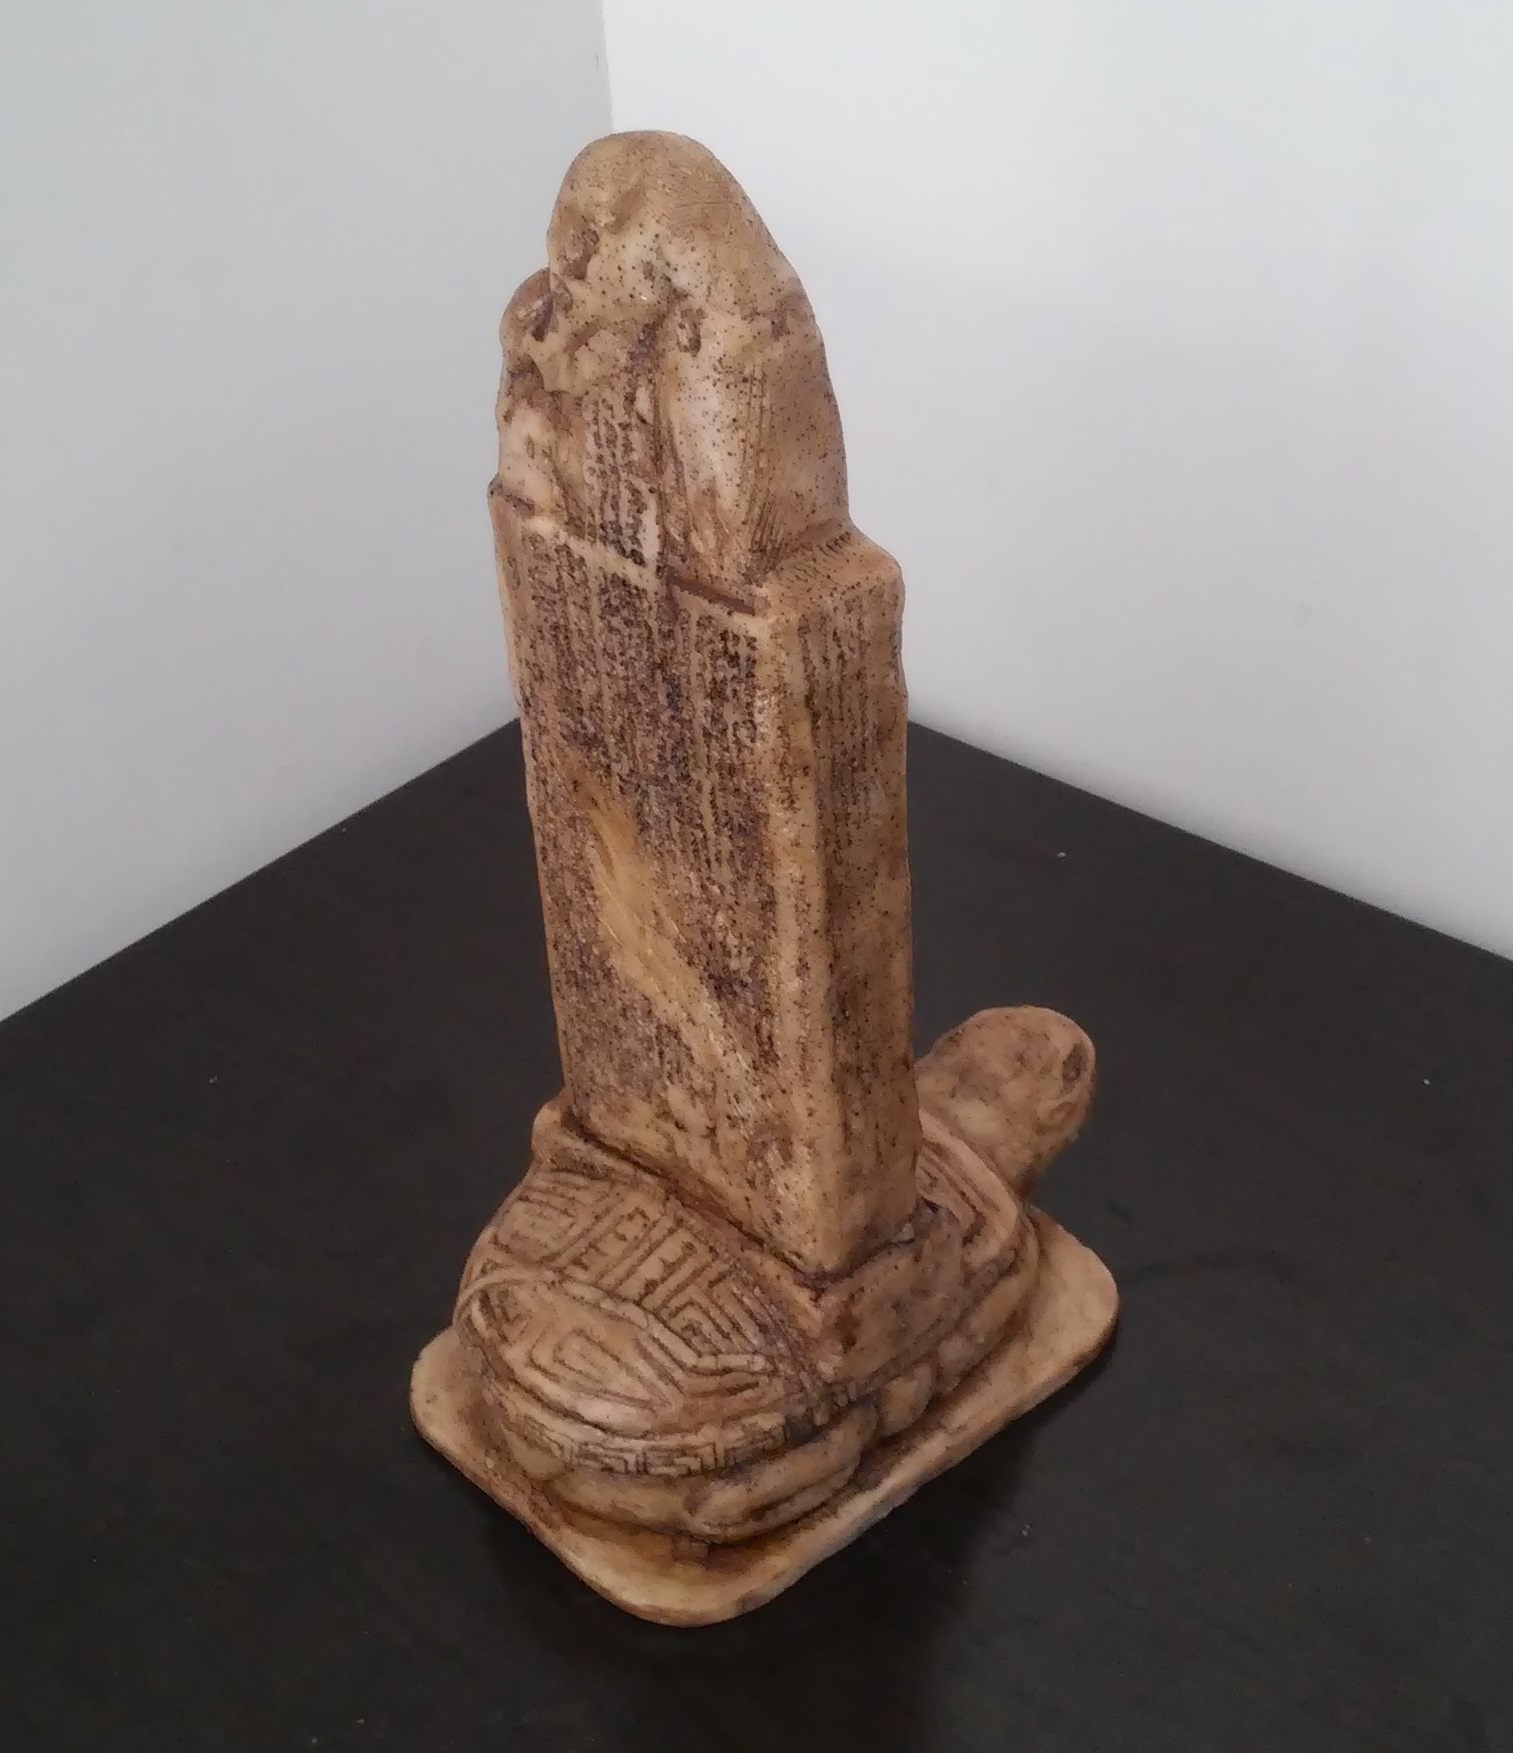 bilge kağan abidesi orhun yazıtlarının üç parçasından biridir.anıt heykel yapımı yaptır biblo atölyesi siparişi imalatı antalya heykeltraş kalıpları kalıp rölyef fiberglas pano